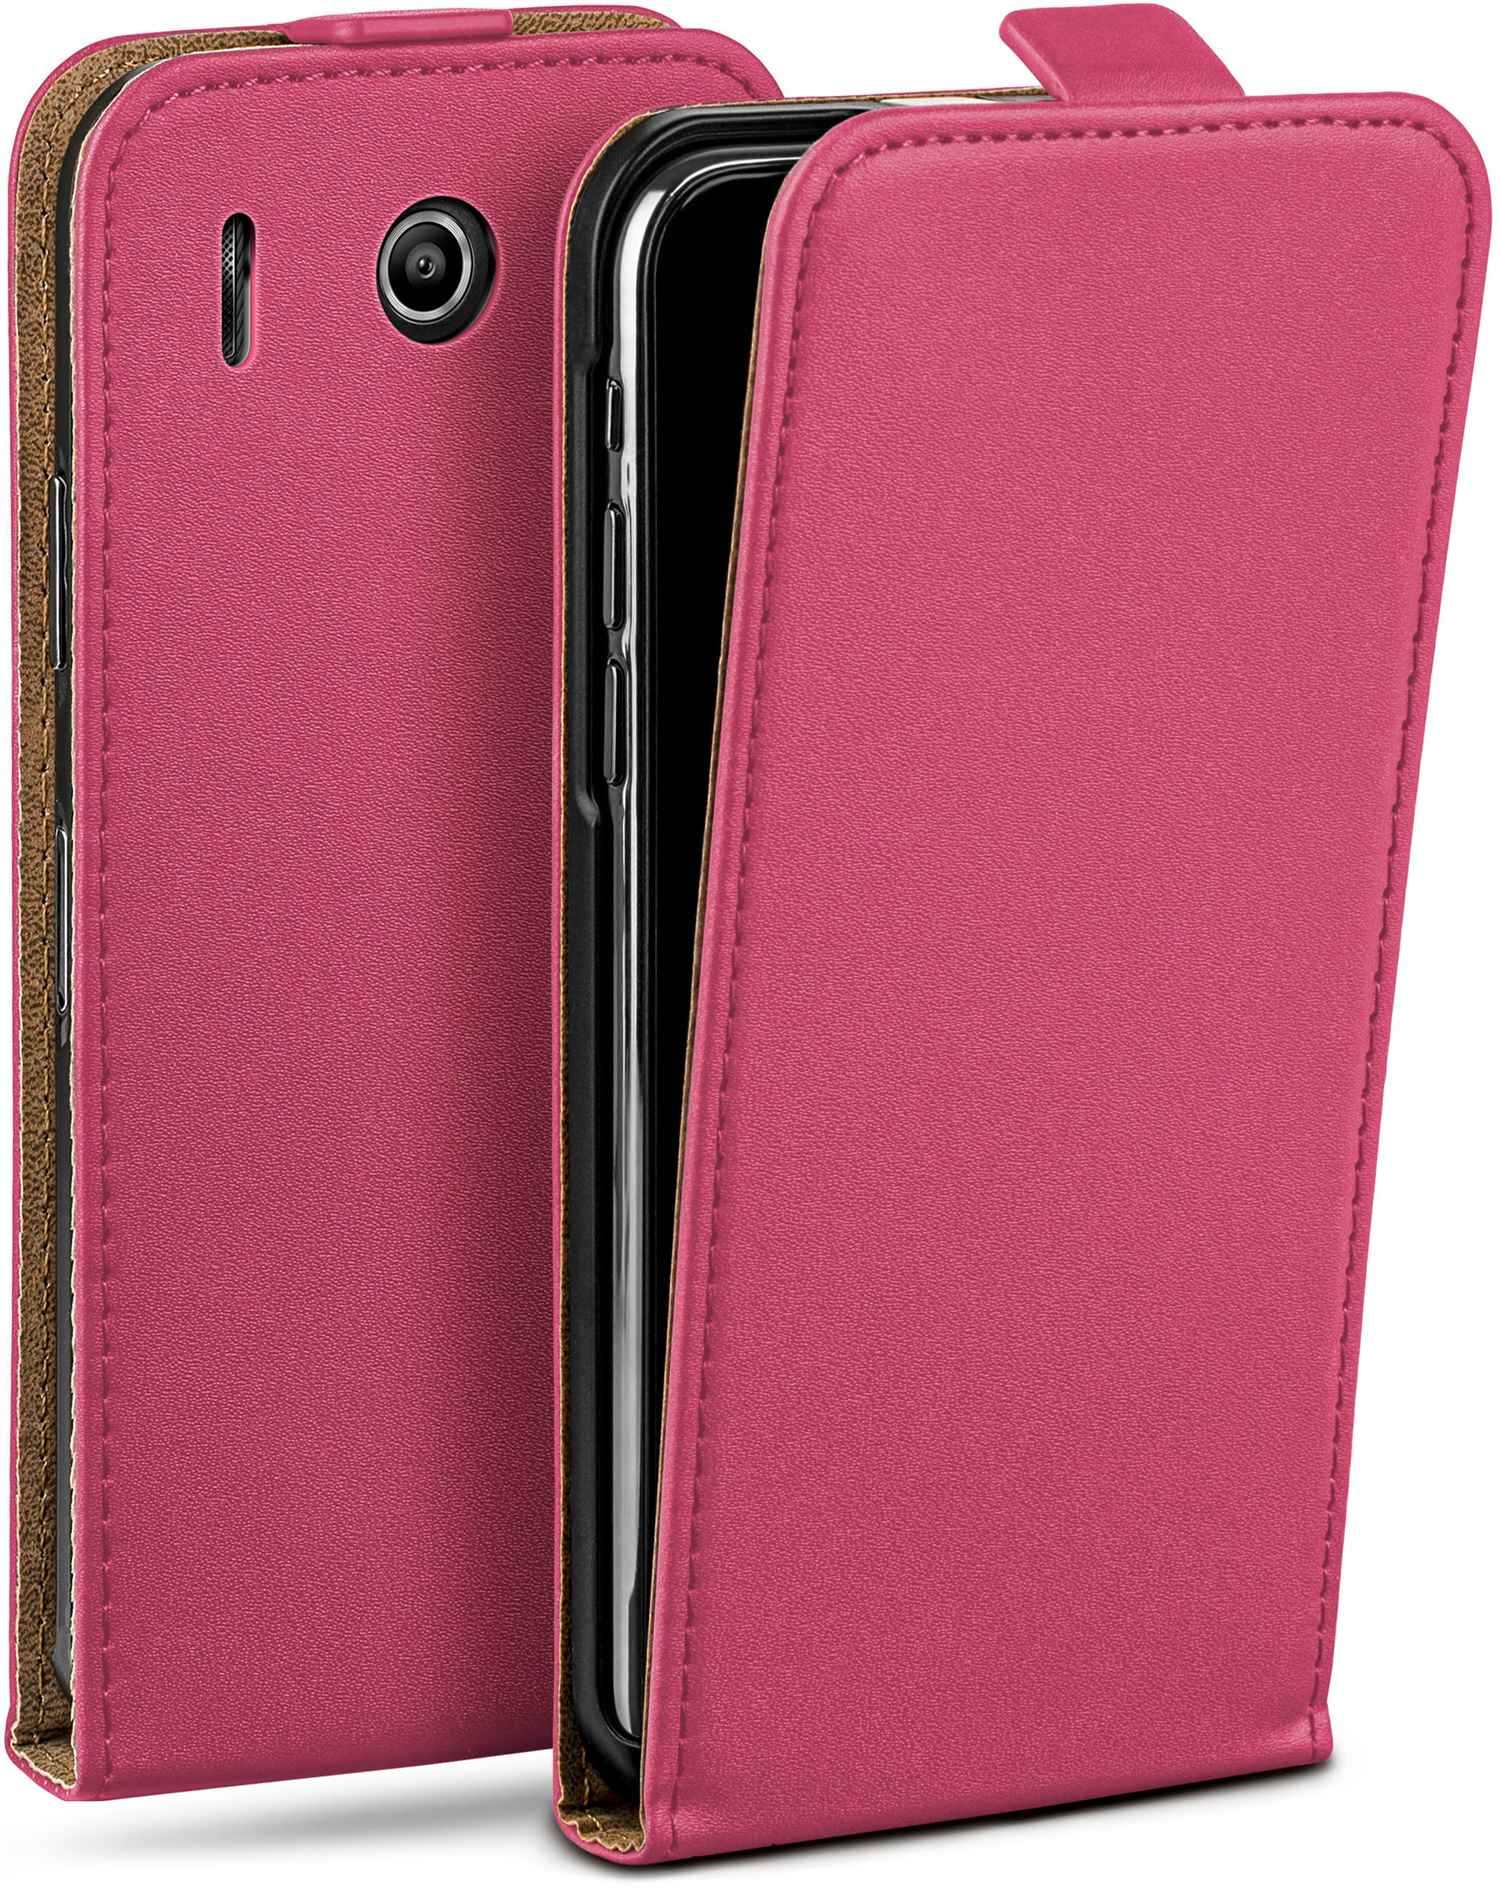 Flip Flip G510, Case, Ascend Huawei, Berry-Fuchsia MOEX Cover,